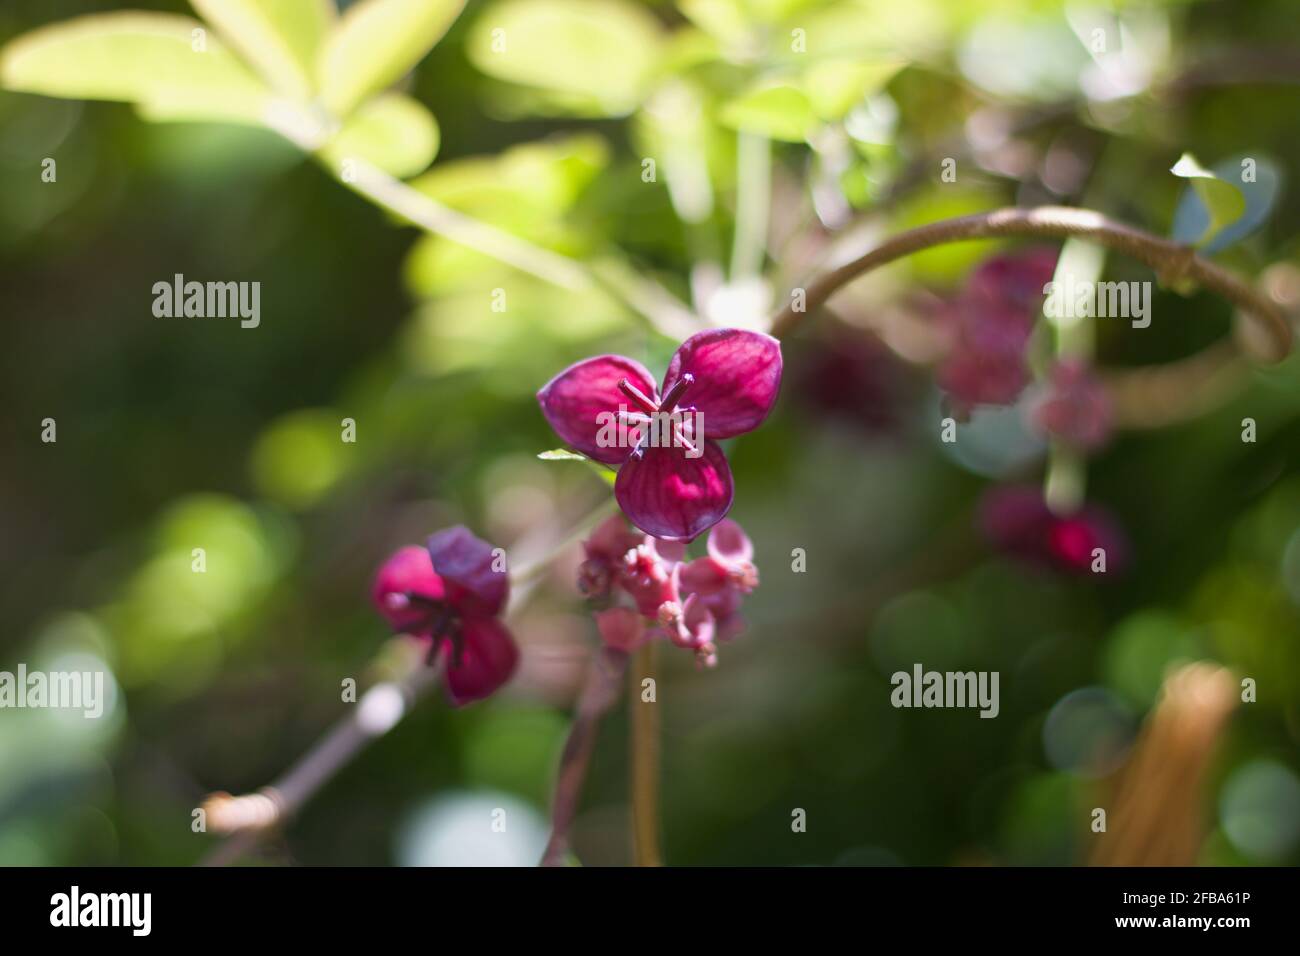 Hermosa imagen de flores rosadas de la vid de chocolate o akebia quinata Foto de stock